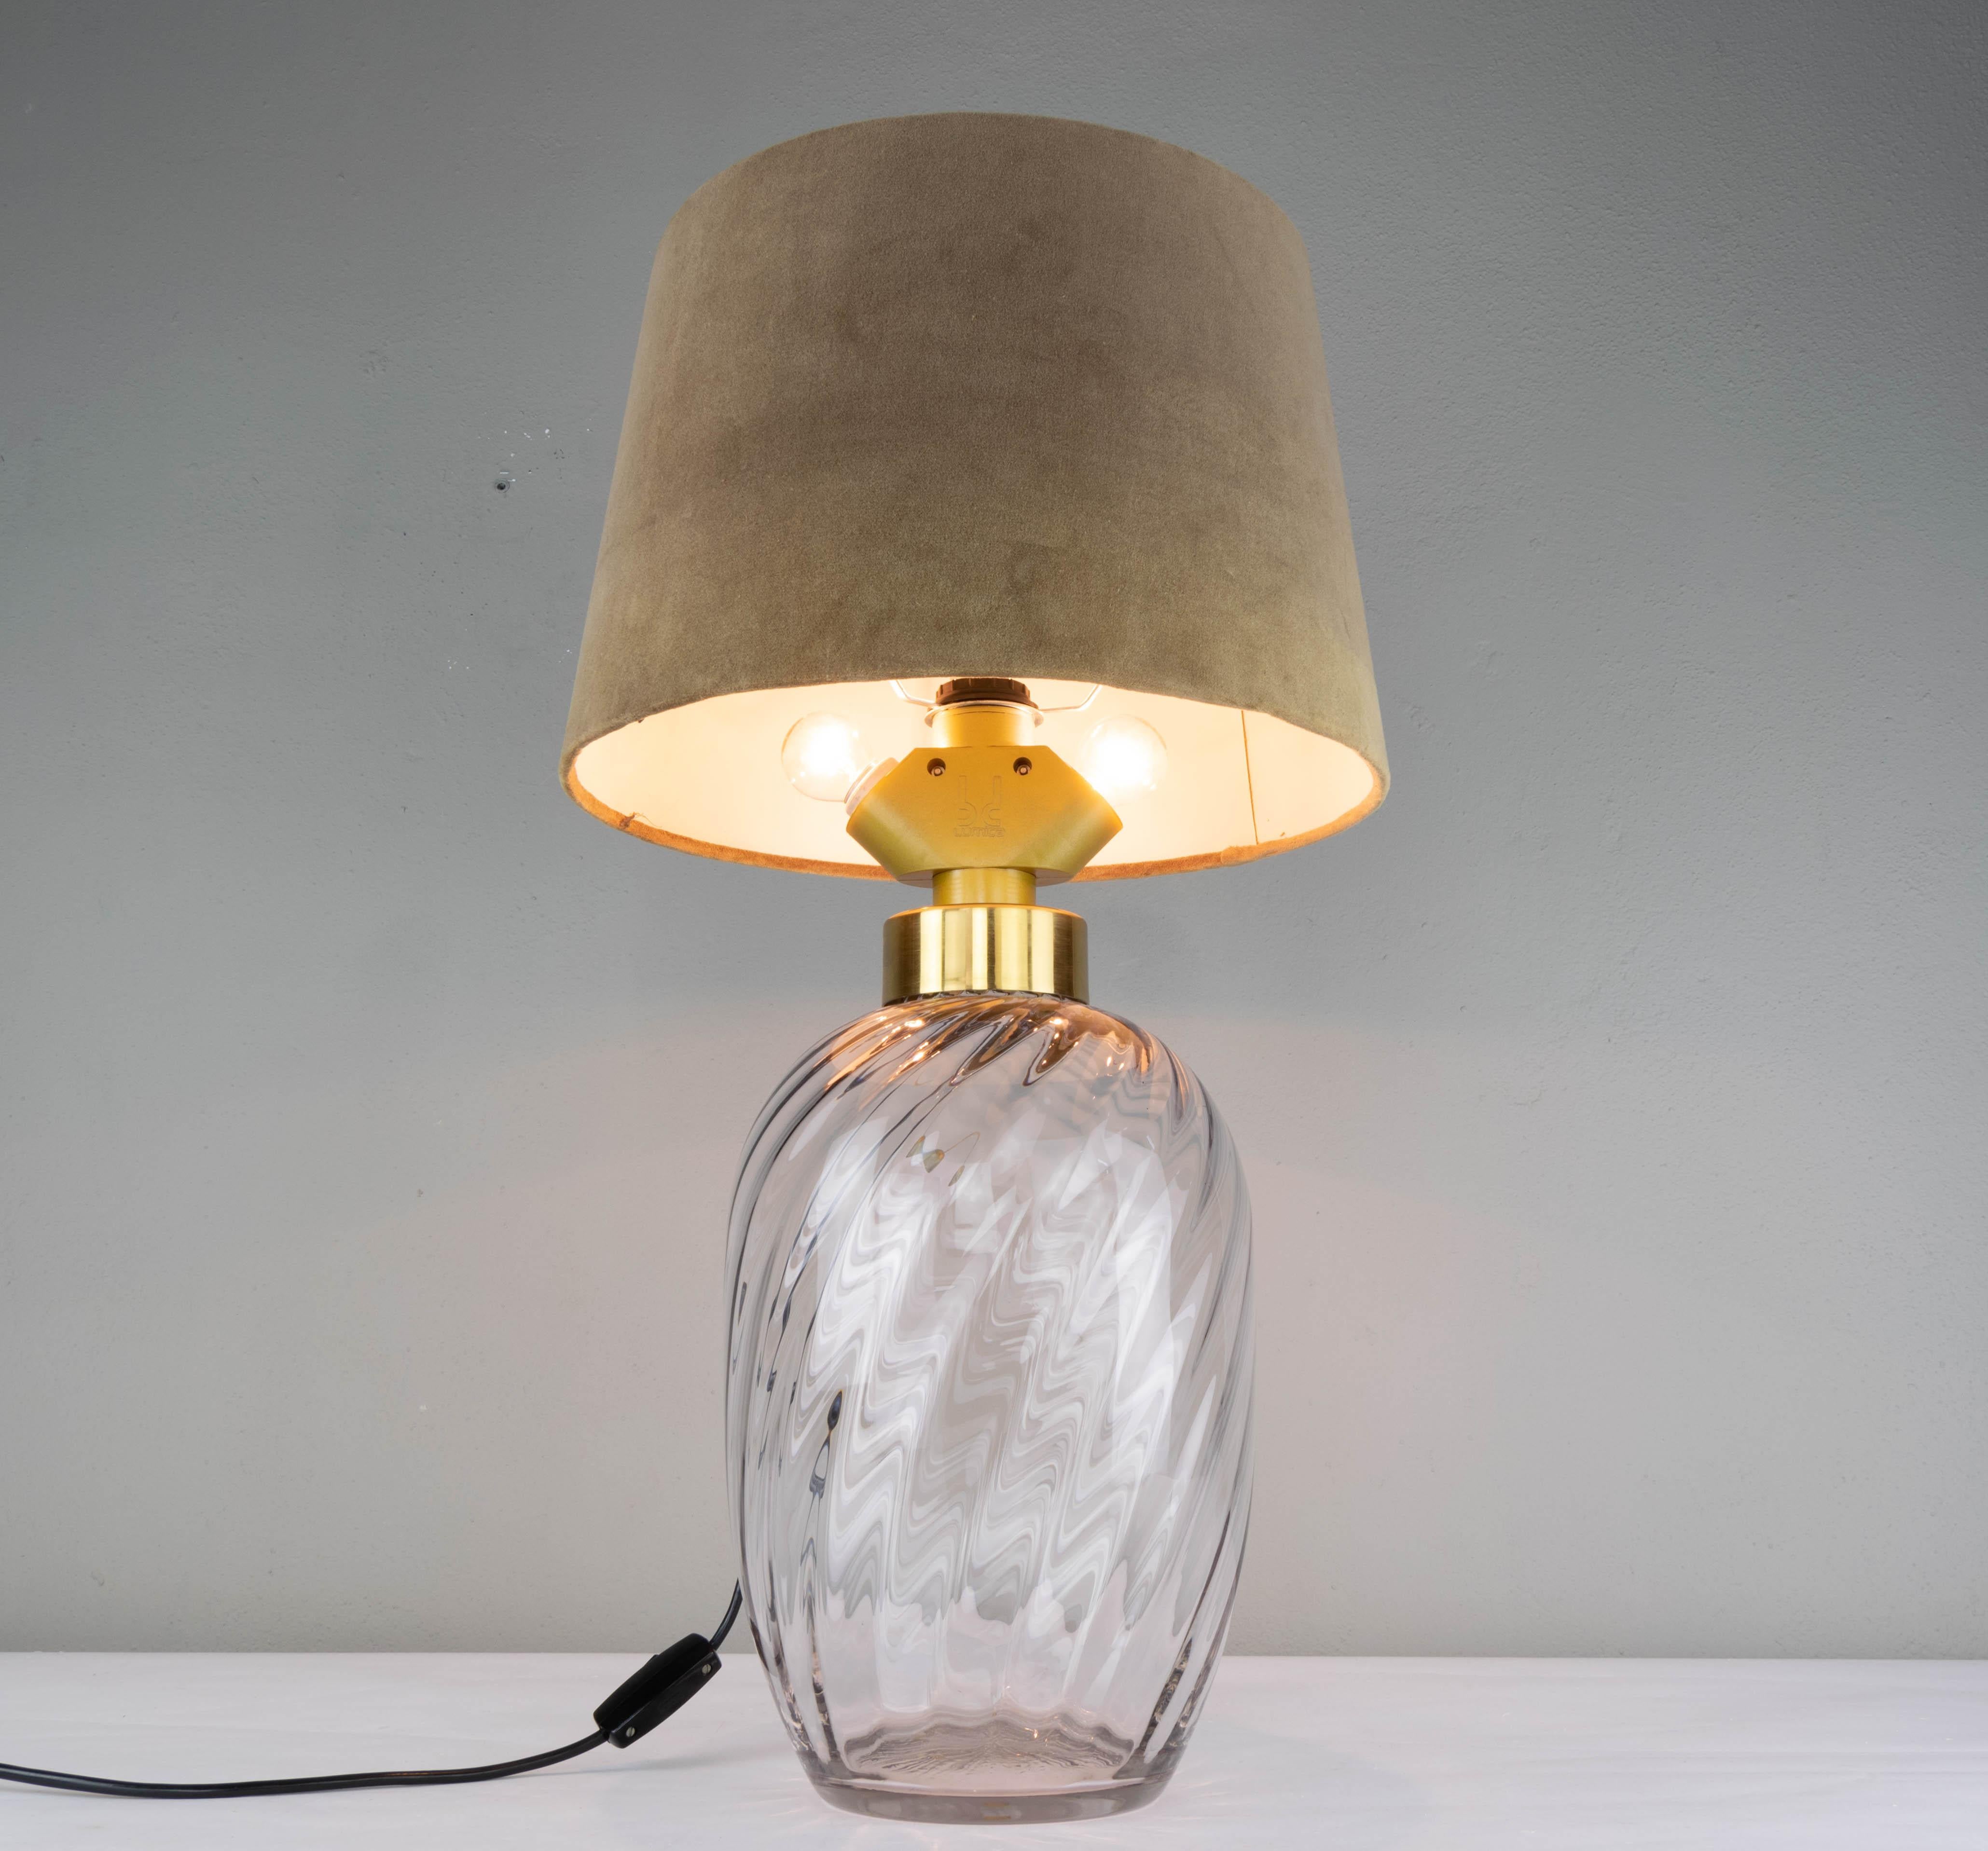 Lampe de table produite par la firme espagnole Lumica dans les années 1970. Corps en verre soufflé. Douille dorée en laiton avec trois douilles E27 qui permet d'allumer 1, 2 ou 3 ampoules grâce à un système 